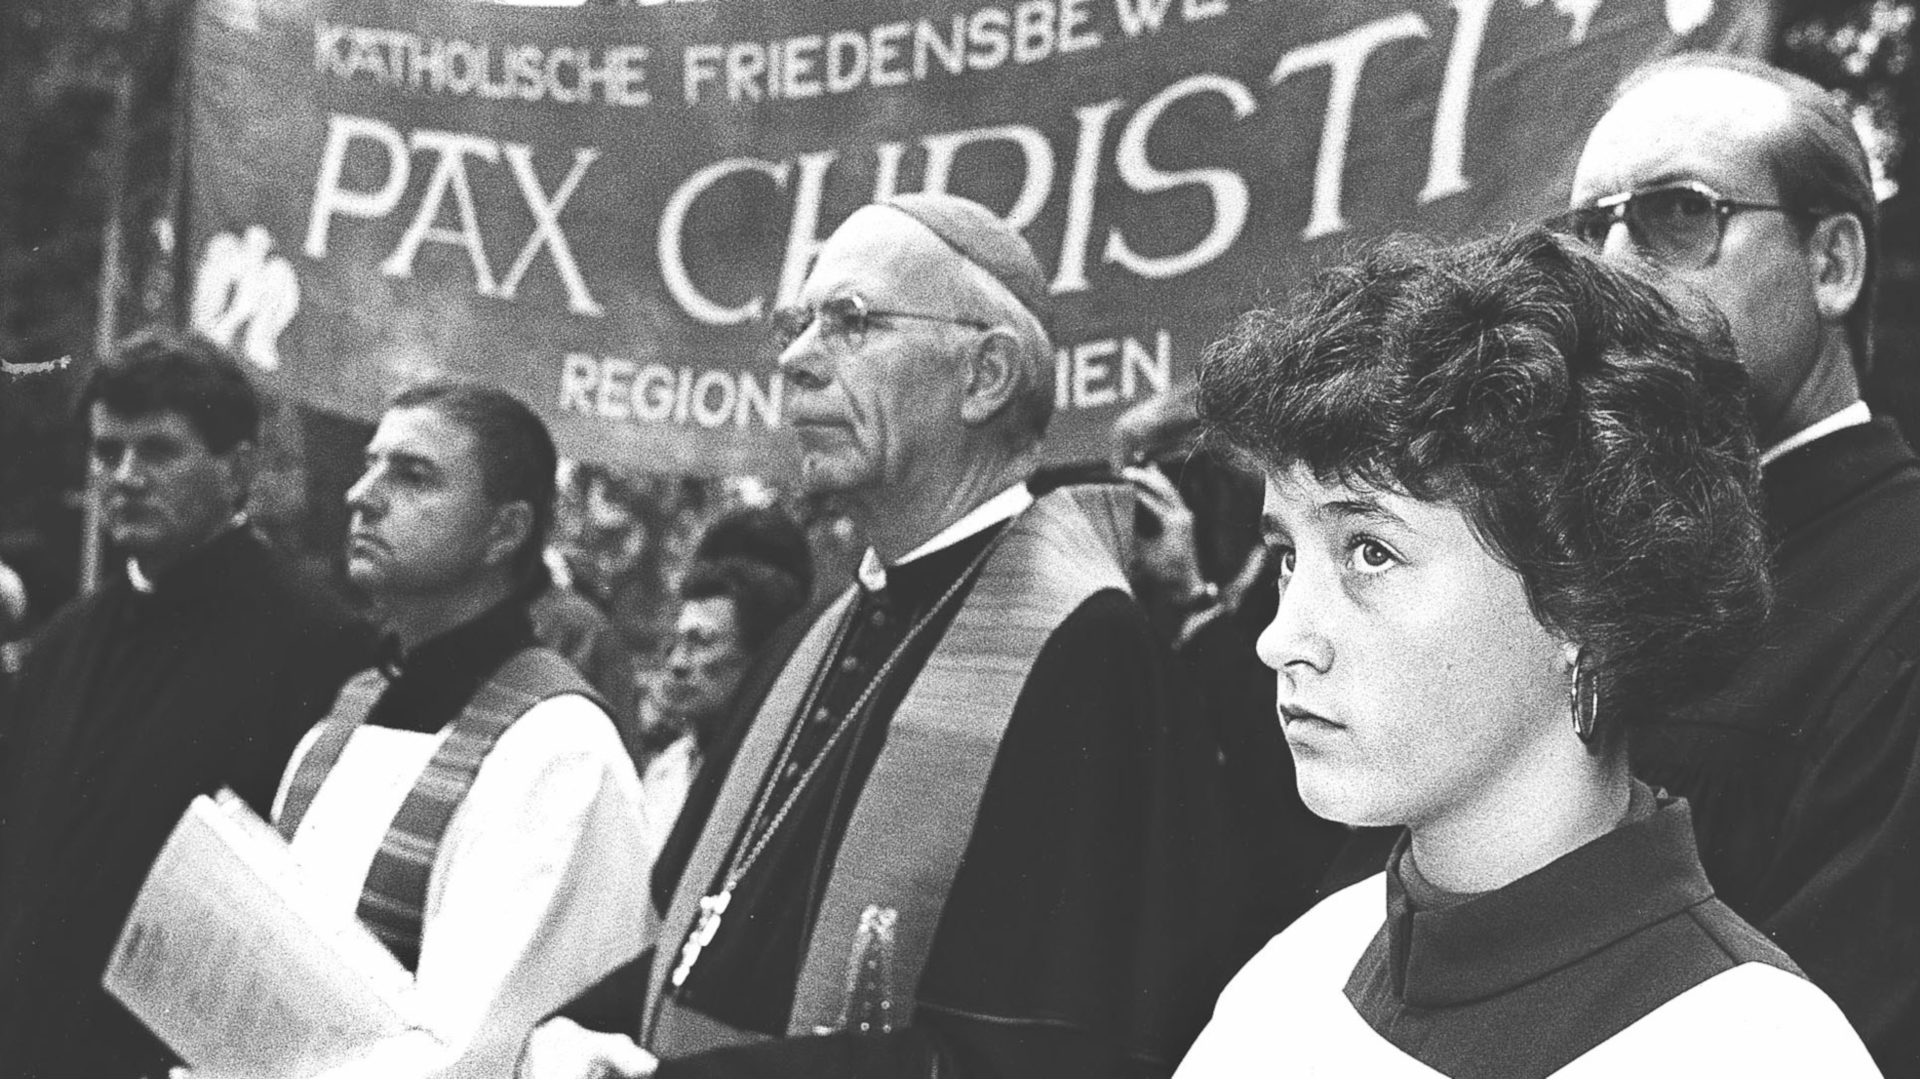 Impressionen der Europäischen-Ökumenischen -Versammlung "Frieden in Gerechtigkeit" 1989 in Basel